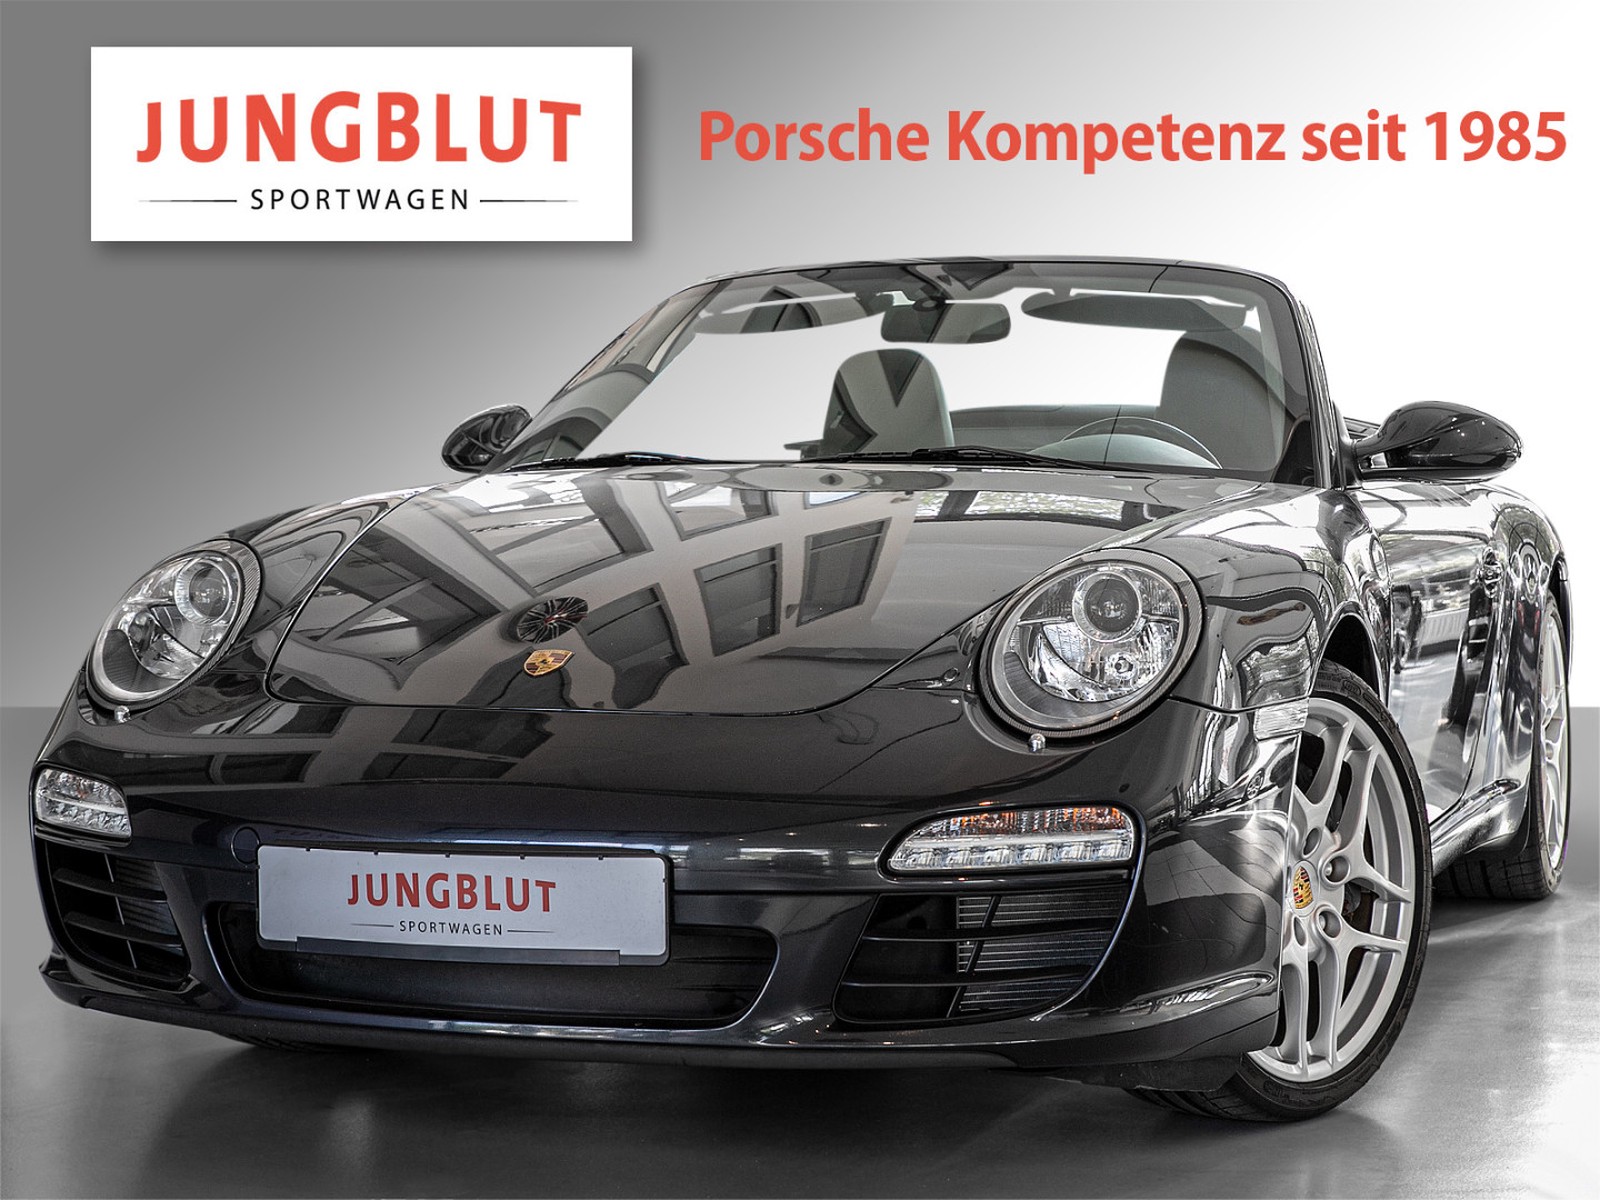 Porsche 997 911 Carrera Cabriolet Sportabgasanlage Gebraucht Kaufen In Hamburg Preis Eur Int Nr 305 Verkauft